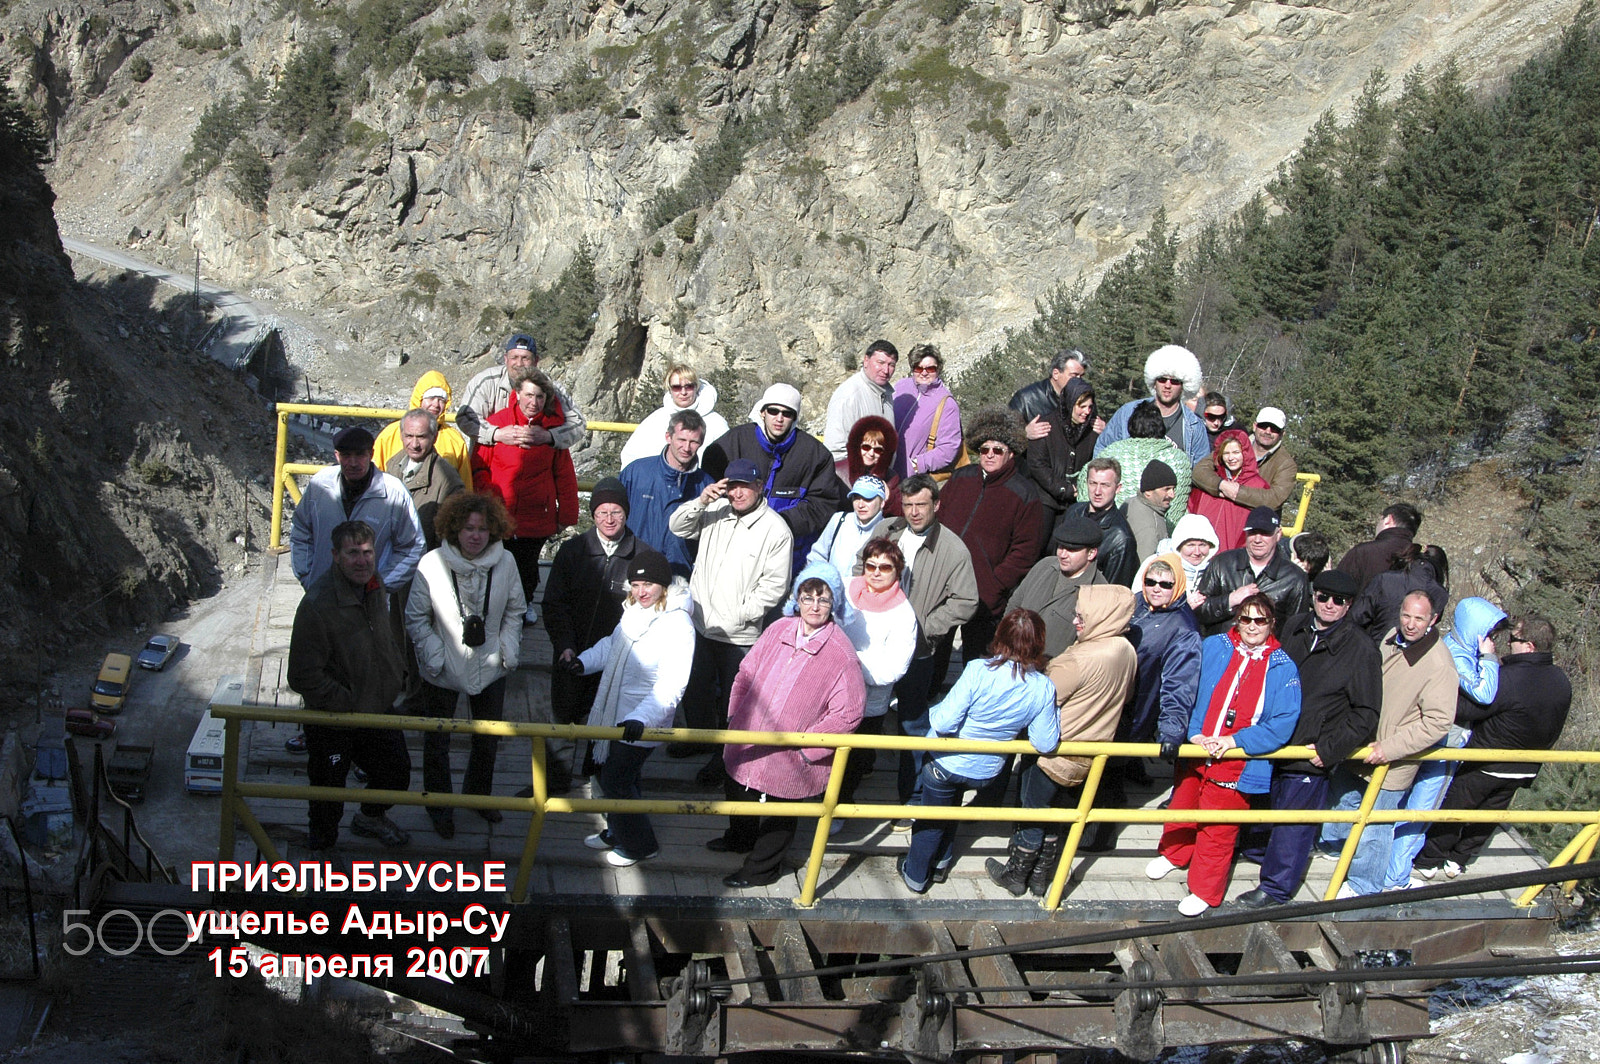 Nikon D70 + AF-S Zoom-Nikkor 24-85mm f/3.5-4.5G IF-ED sample photo. Caucasus. kislovodsk adyr-su april 15, 2007. photography